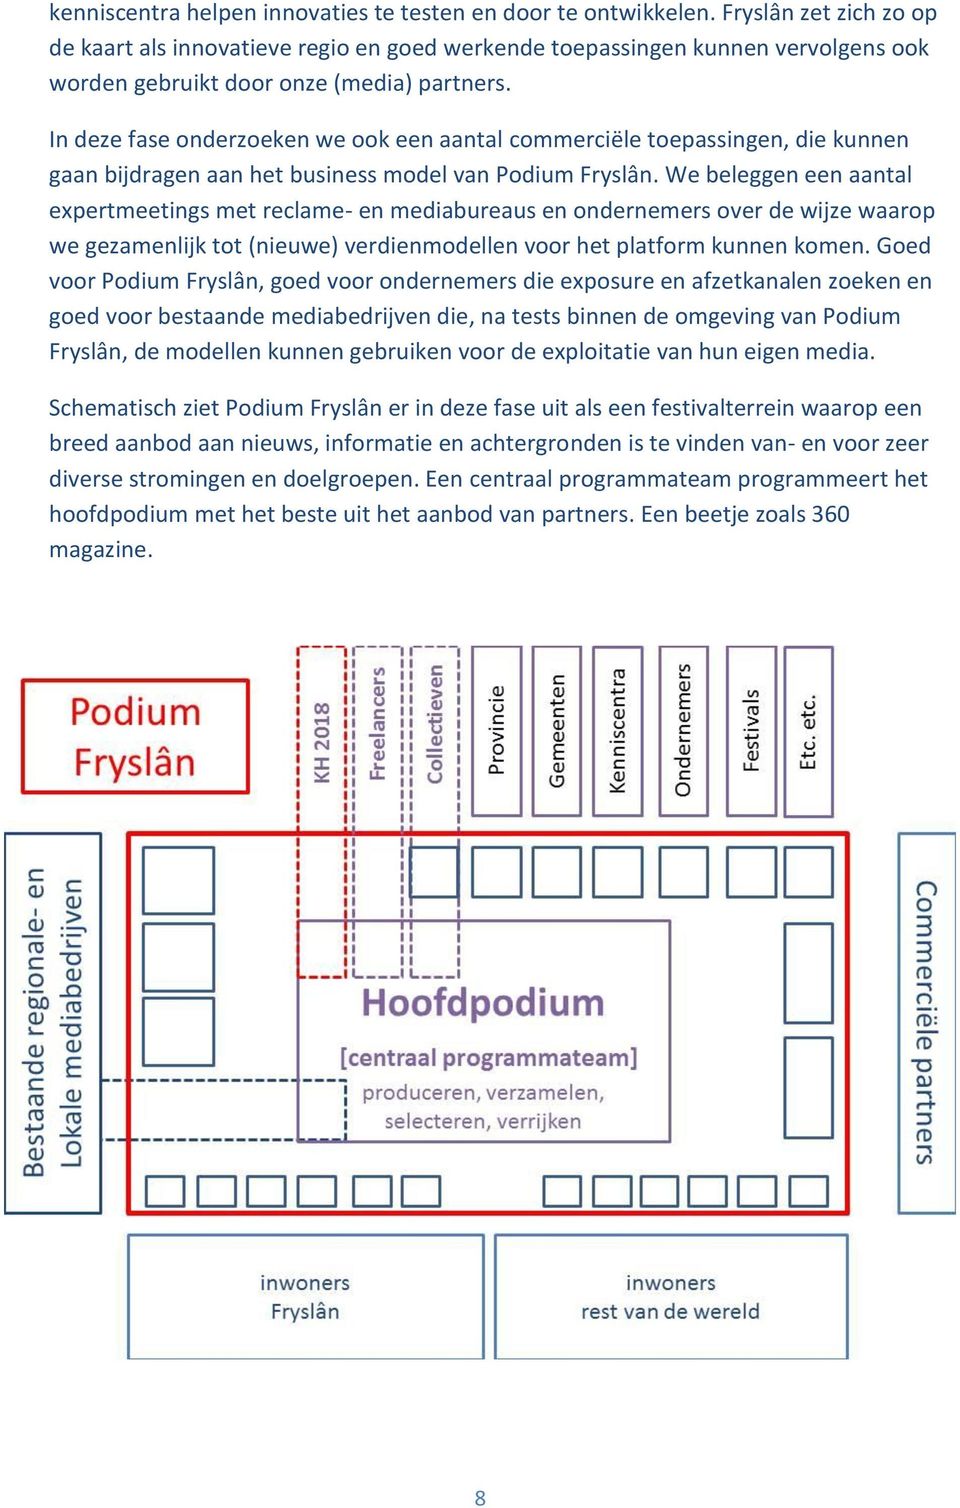 In deze fase onderzoeken we ook een aantal commerciële toepassingen, die kunnen gaan bijdragen aan het business model van Podium Fryslân.